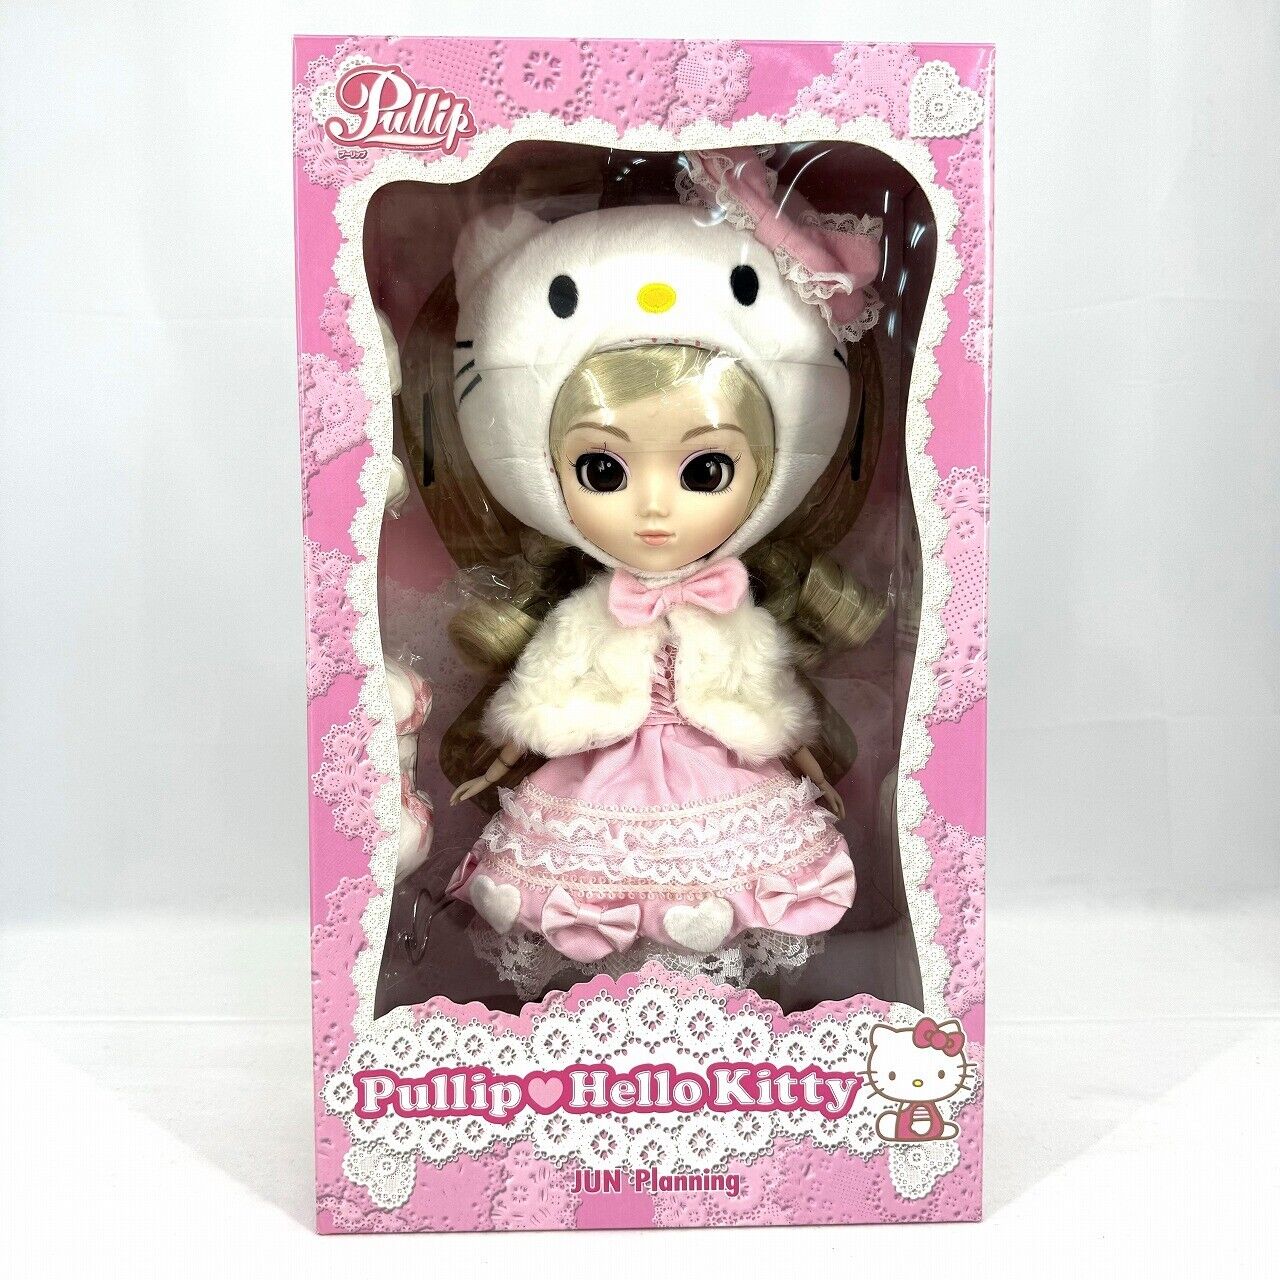 Pullip Hello Kitty collaboration Doll Jun Planning Sanrio F-578 Loli Style Japan